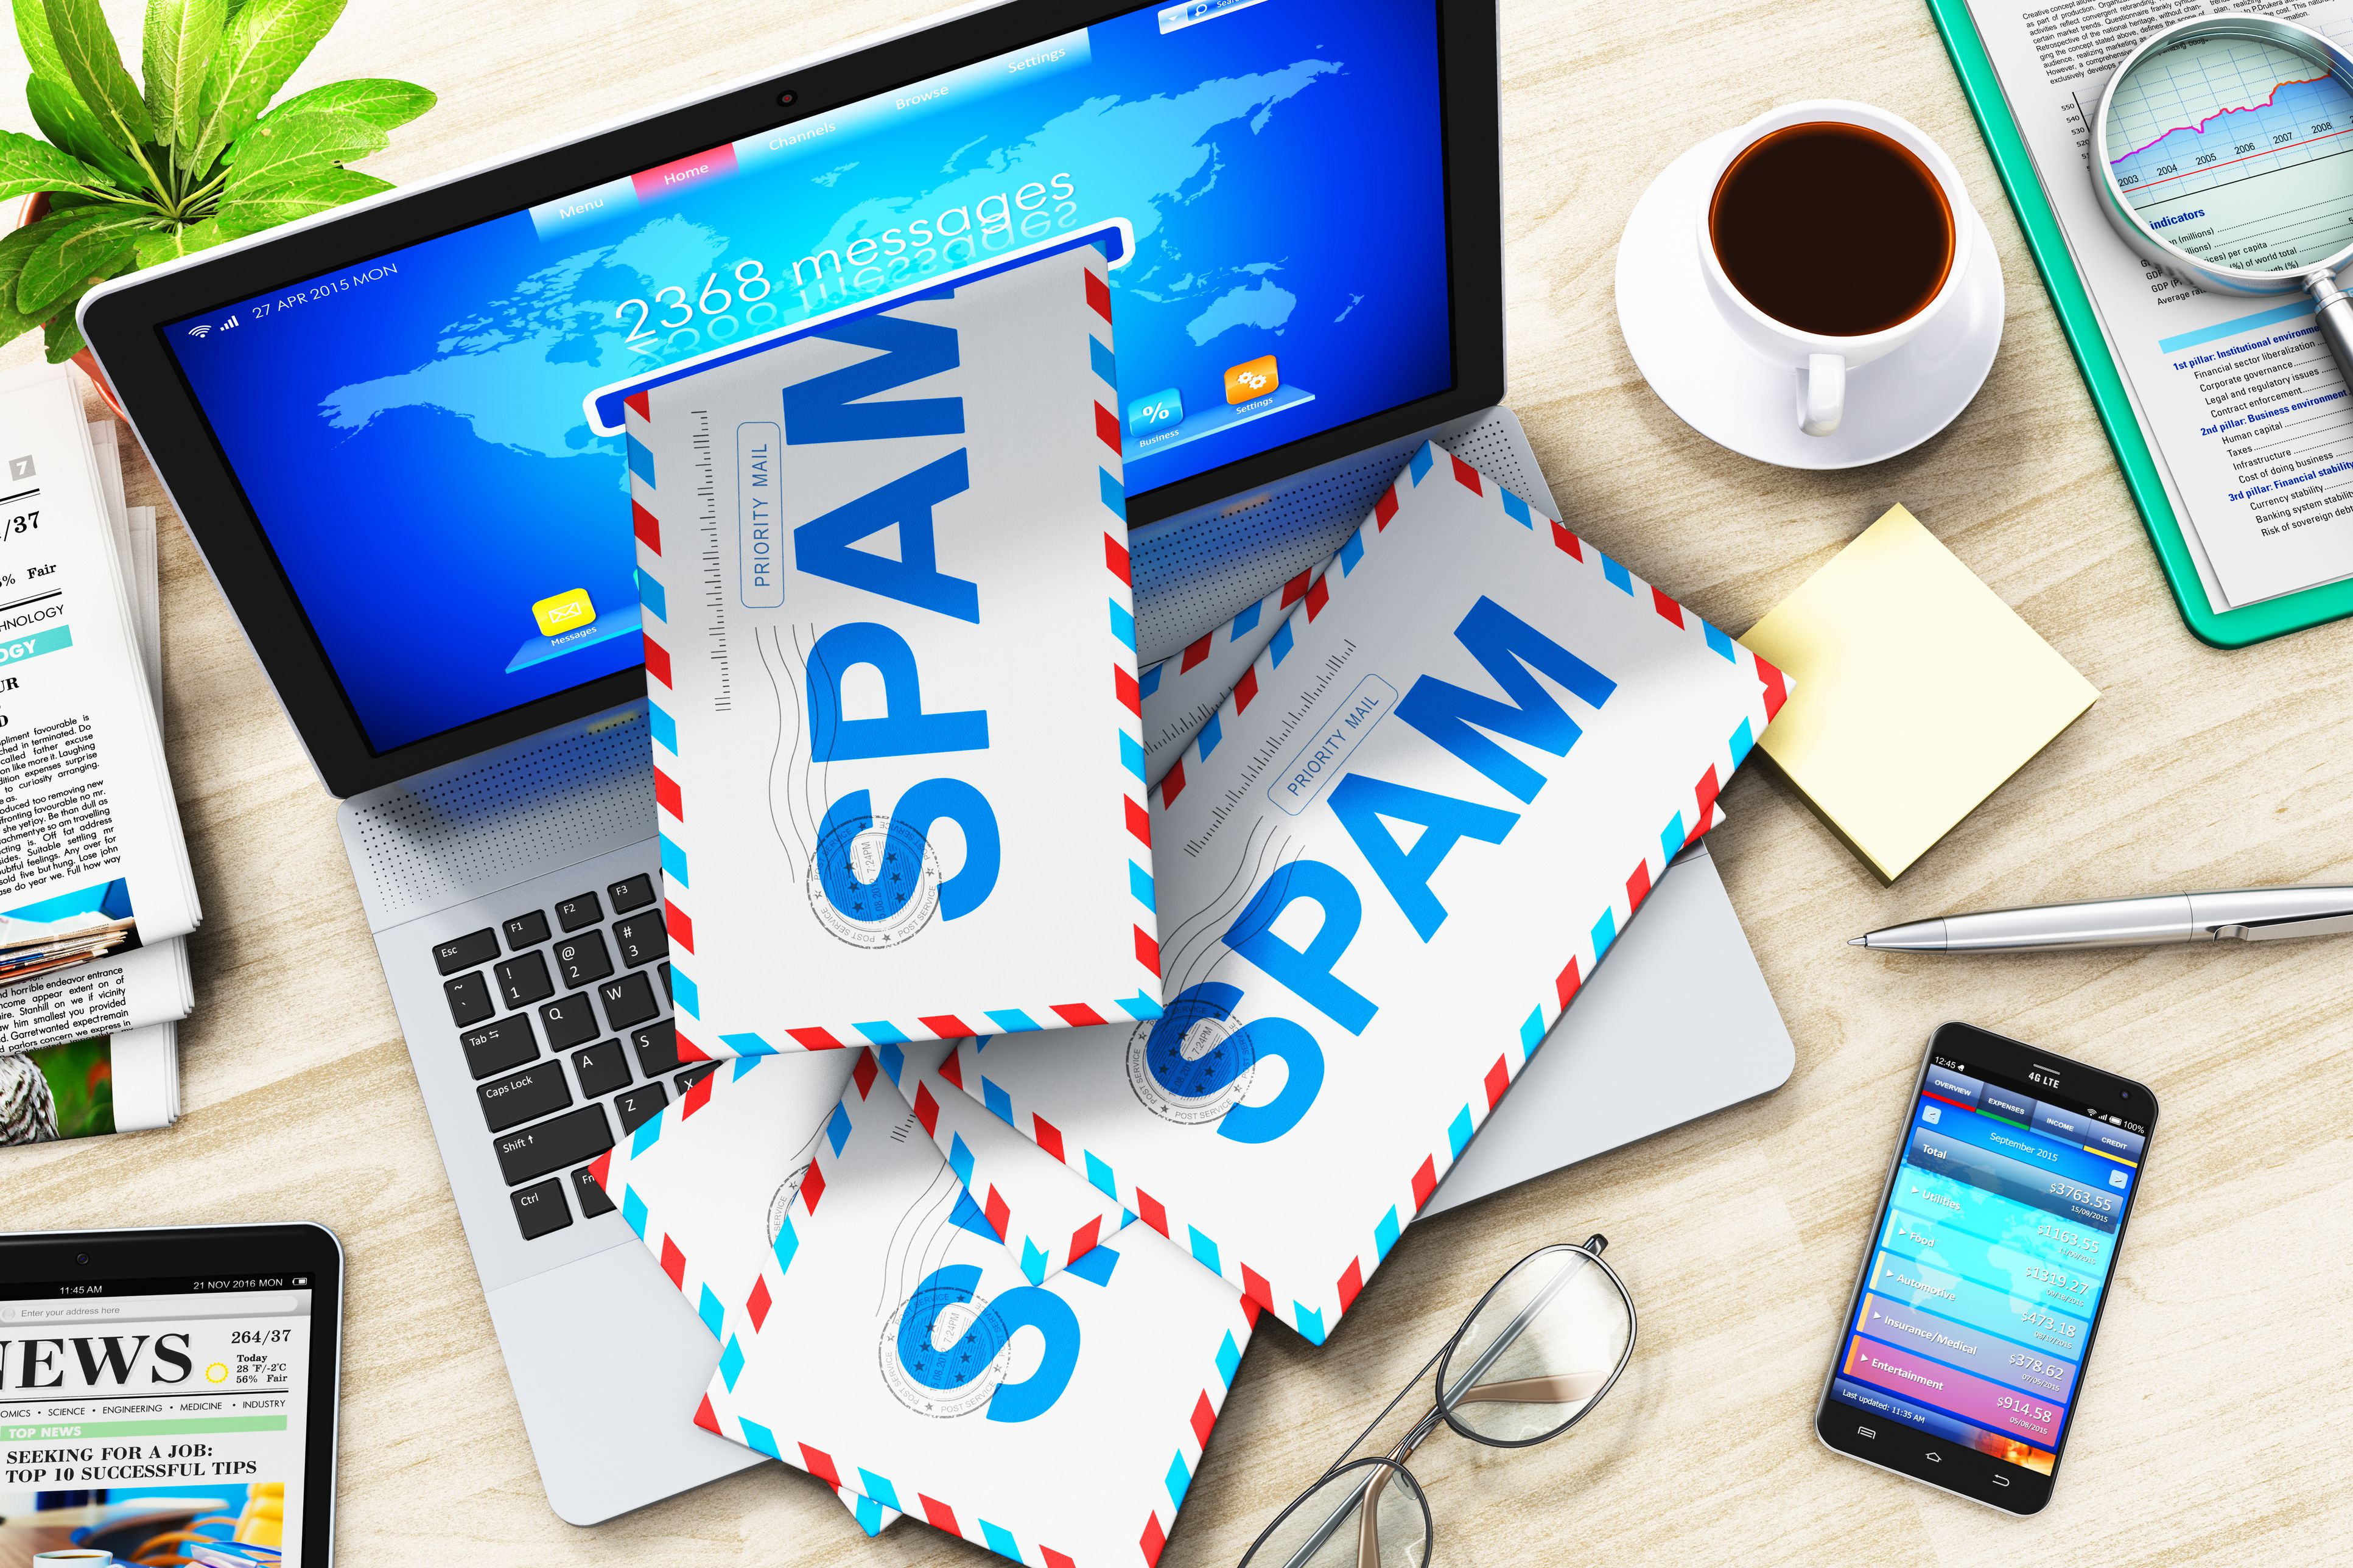 Junk mail là gì và cách gửi email hiệu quả không bị vào spam